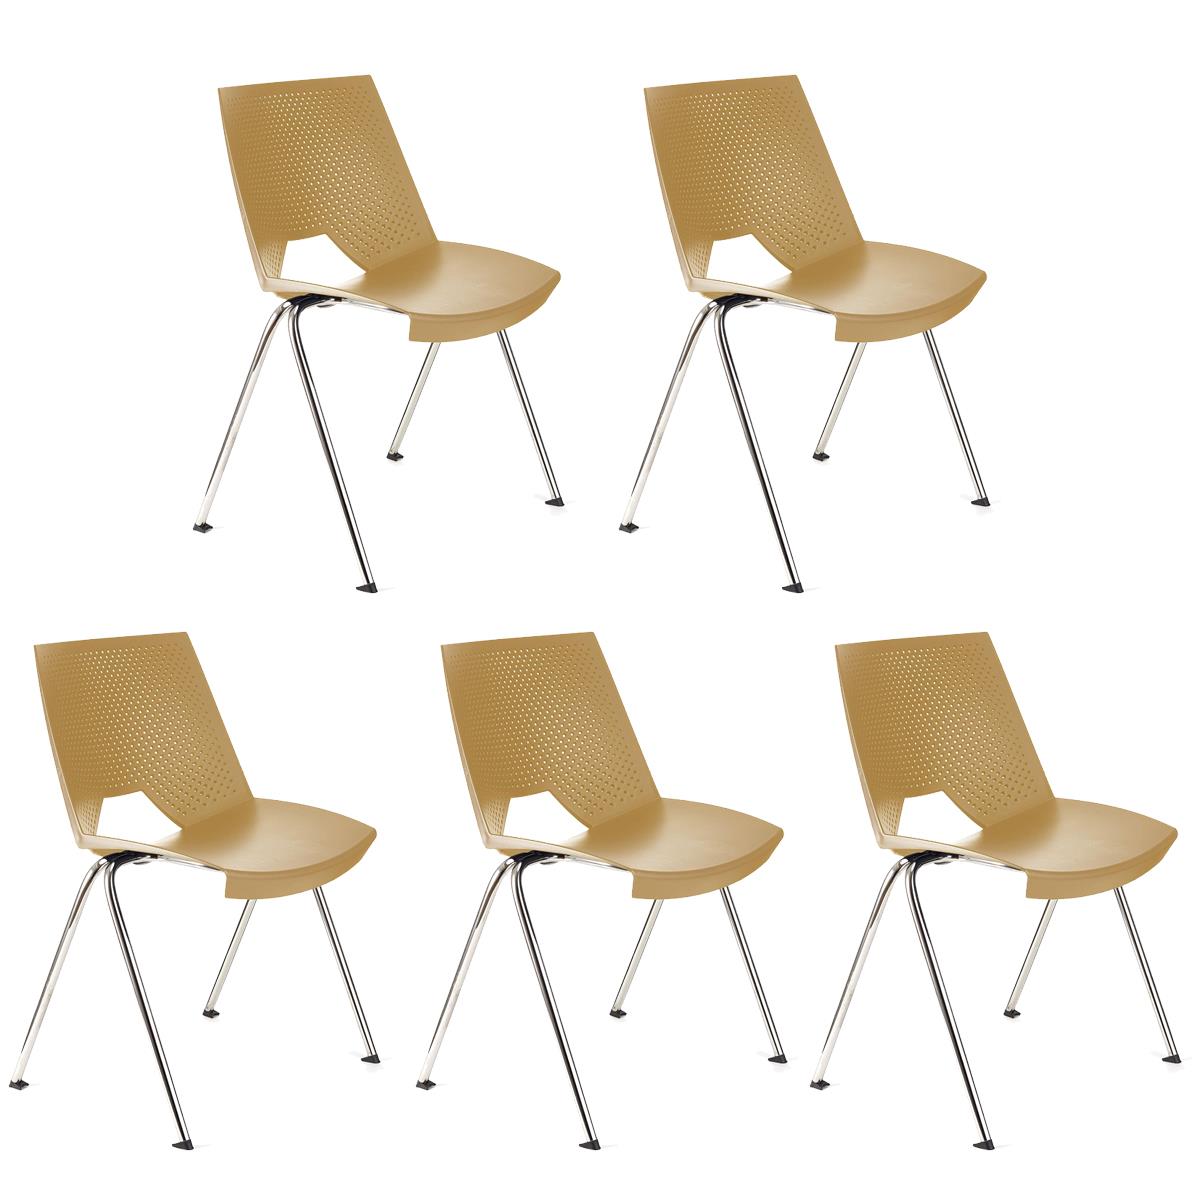 Lote de 5 sillas de Confidente ENZO, Cómodas y Prácticas, Apilables, Color Beige